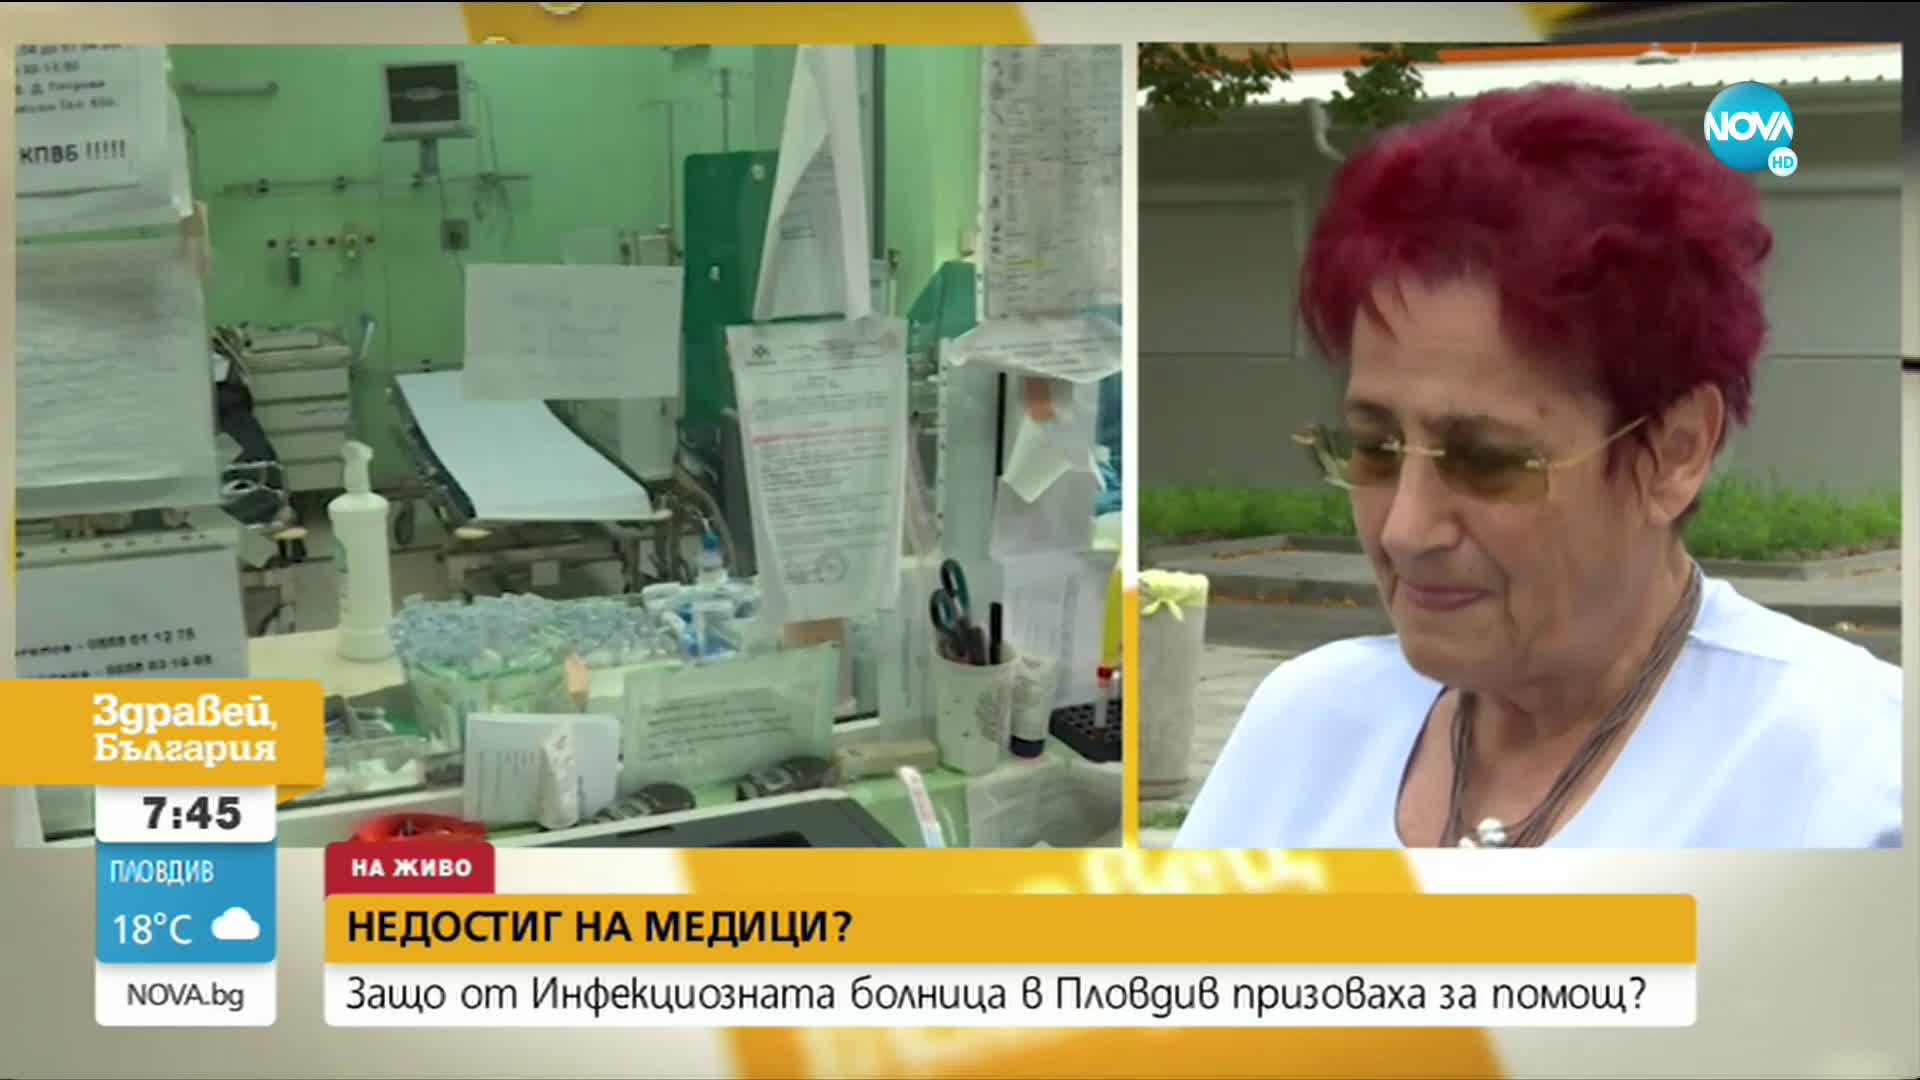 Недостиг на медици в Инфекциозната болница в Пловдив